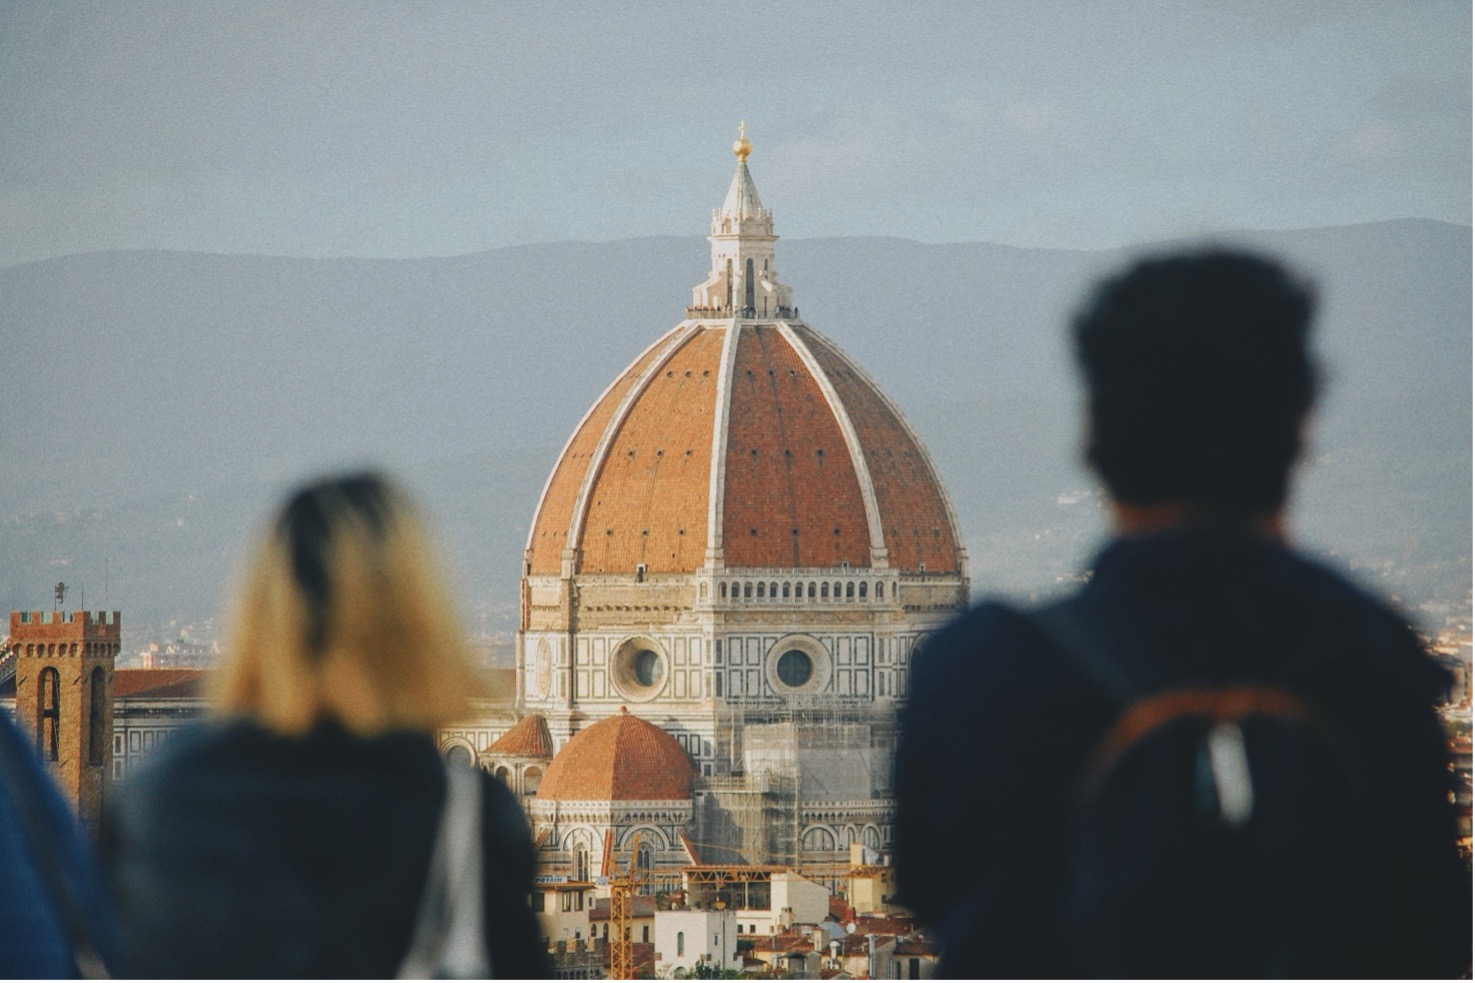 Siti Unesco: Il duomo di Firenze